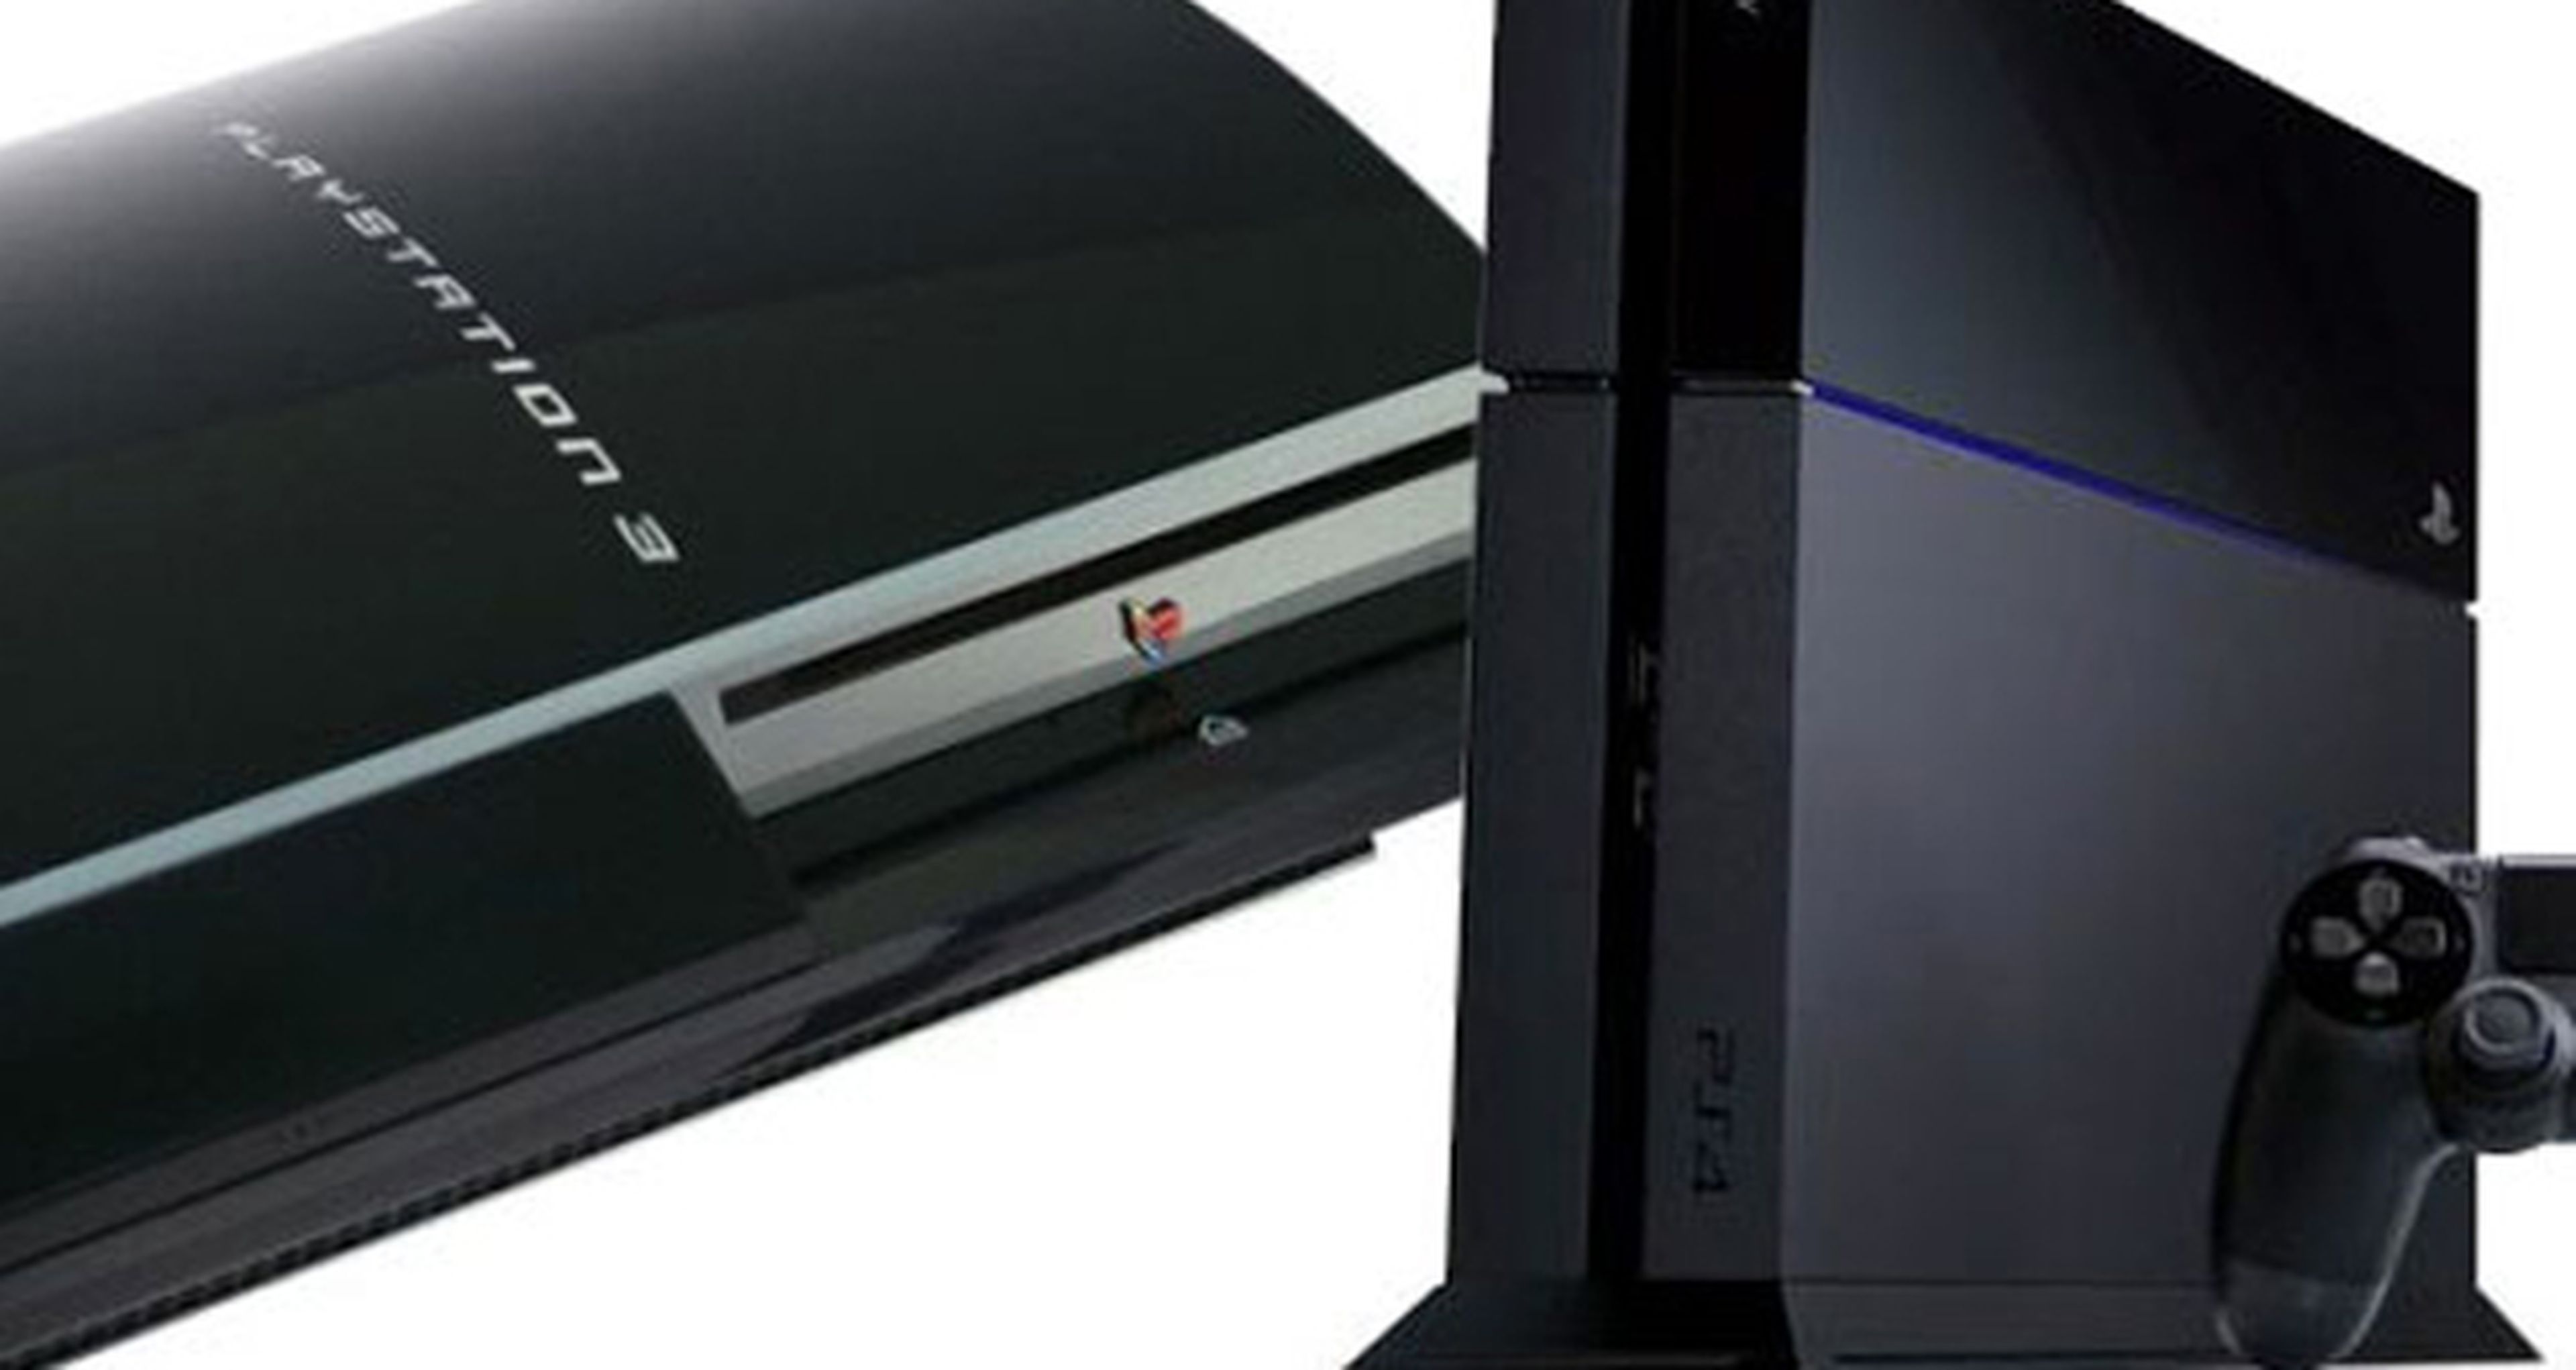 Rumor: Nuevos modelos de PS3 y PS4 en camino | Hobby Consolas